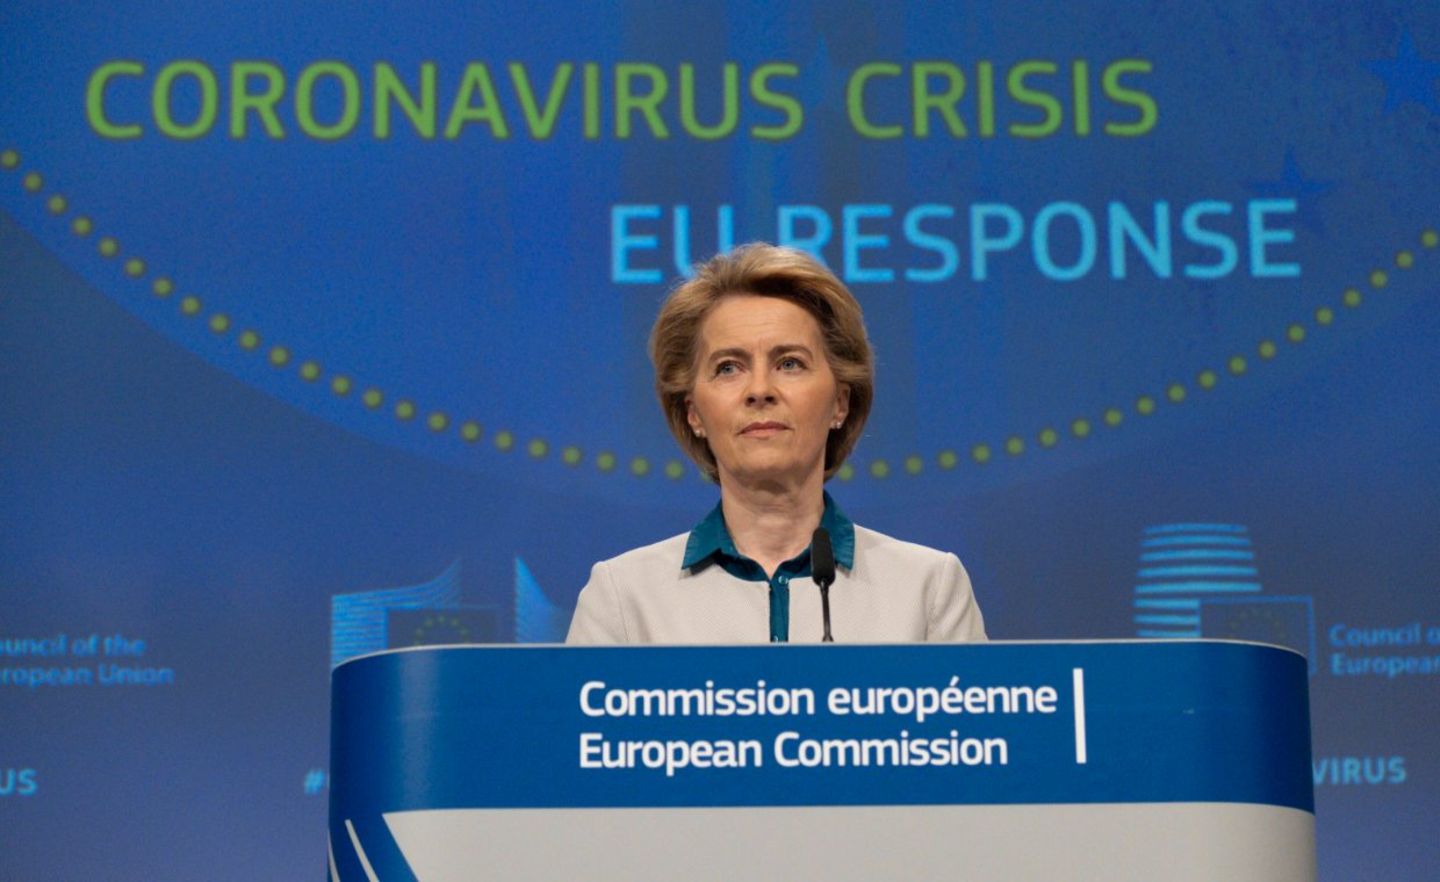 EU-Kommissionspräsidentin Ursula von der Leyen bei einer Pressekonferenz Mitte April. Am 27. Mai präsentierte sie den Vorschlag der Kommission für den neuen EU-Haushalt und ein Aufbauprogramm zur Erholung nach der Corona-Krise